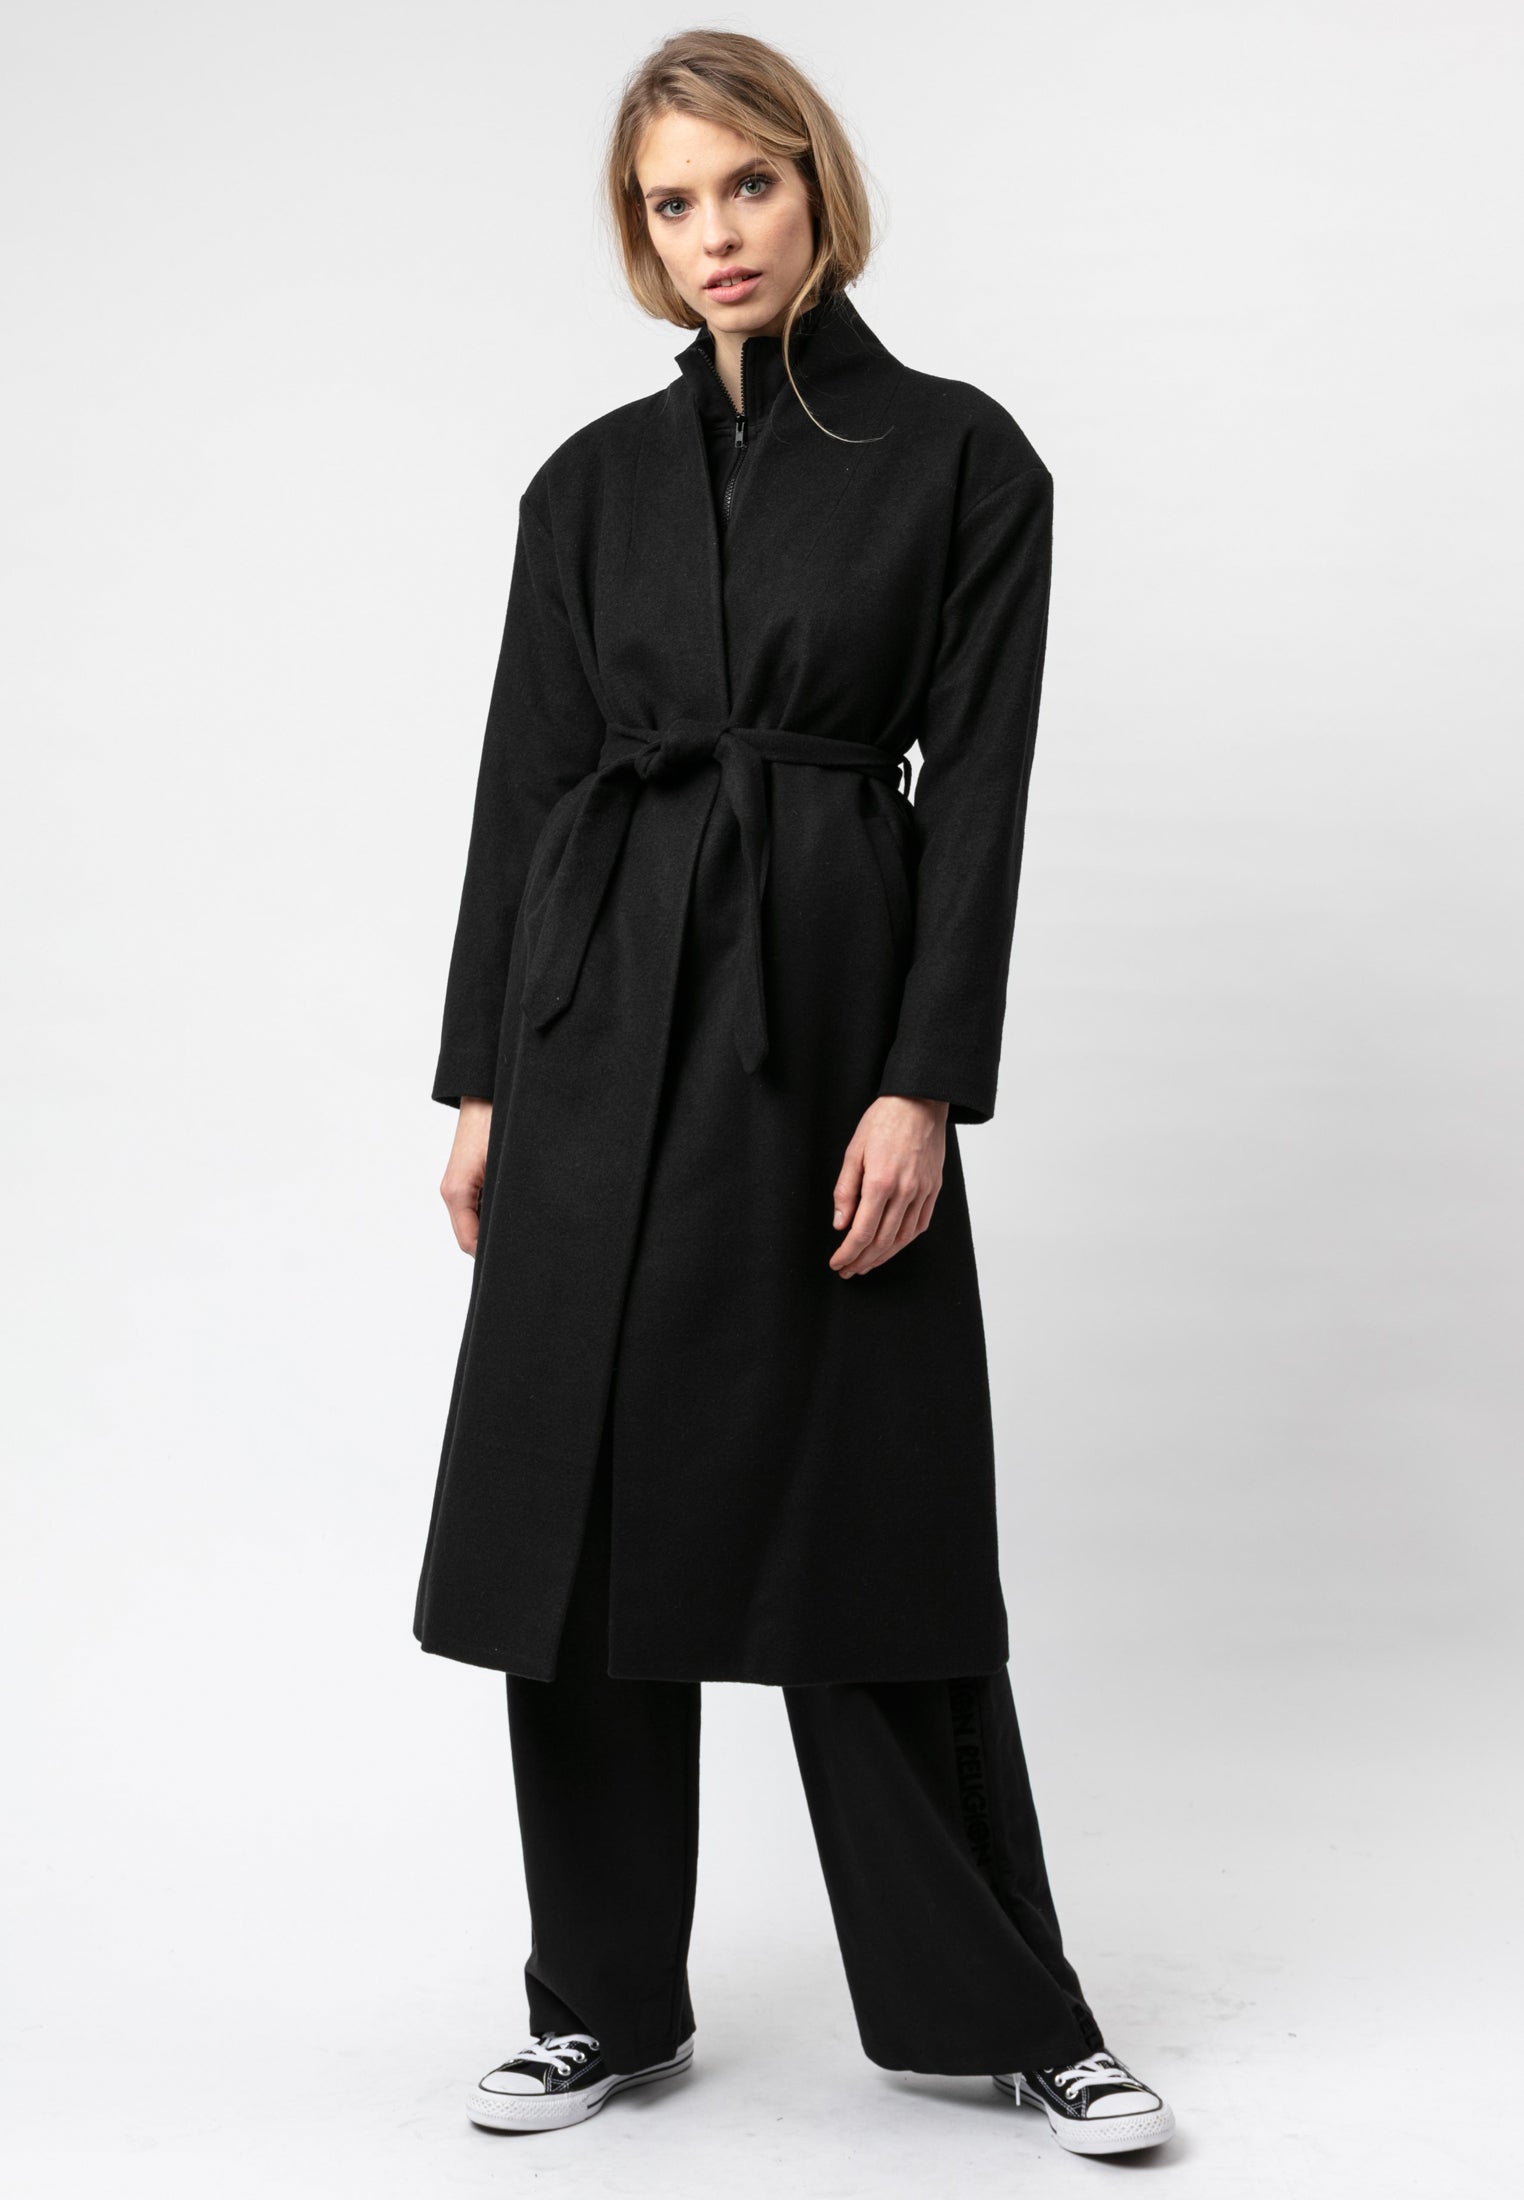 RELIGION Spirit Tailored Black Coat